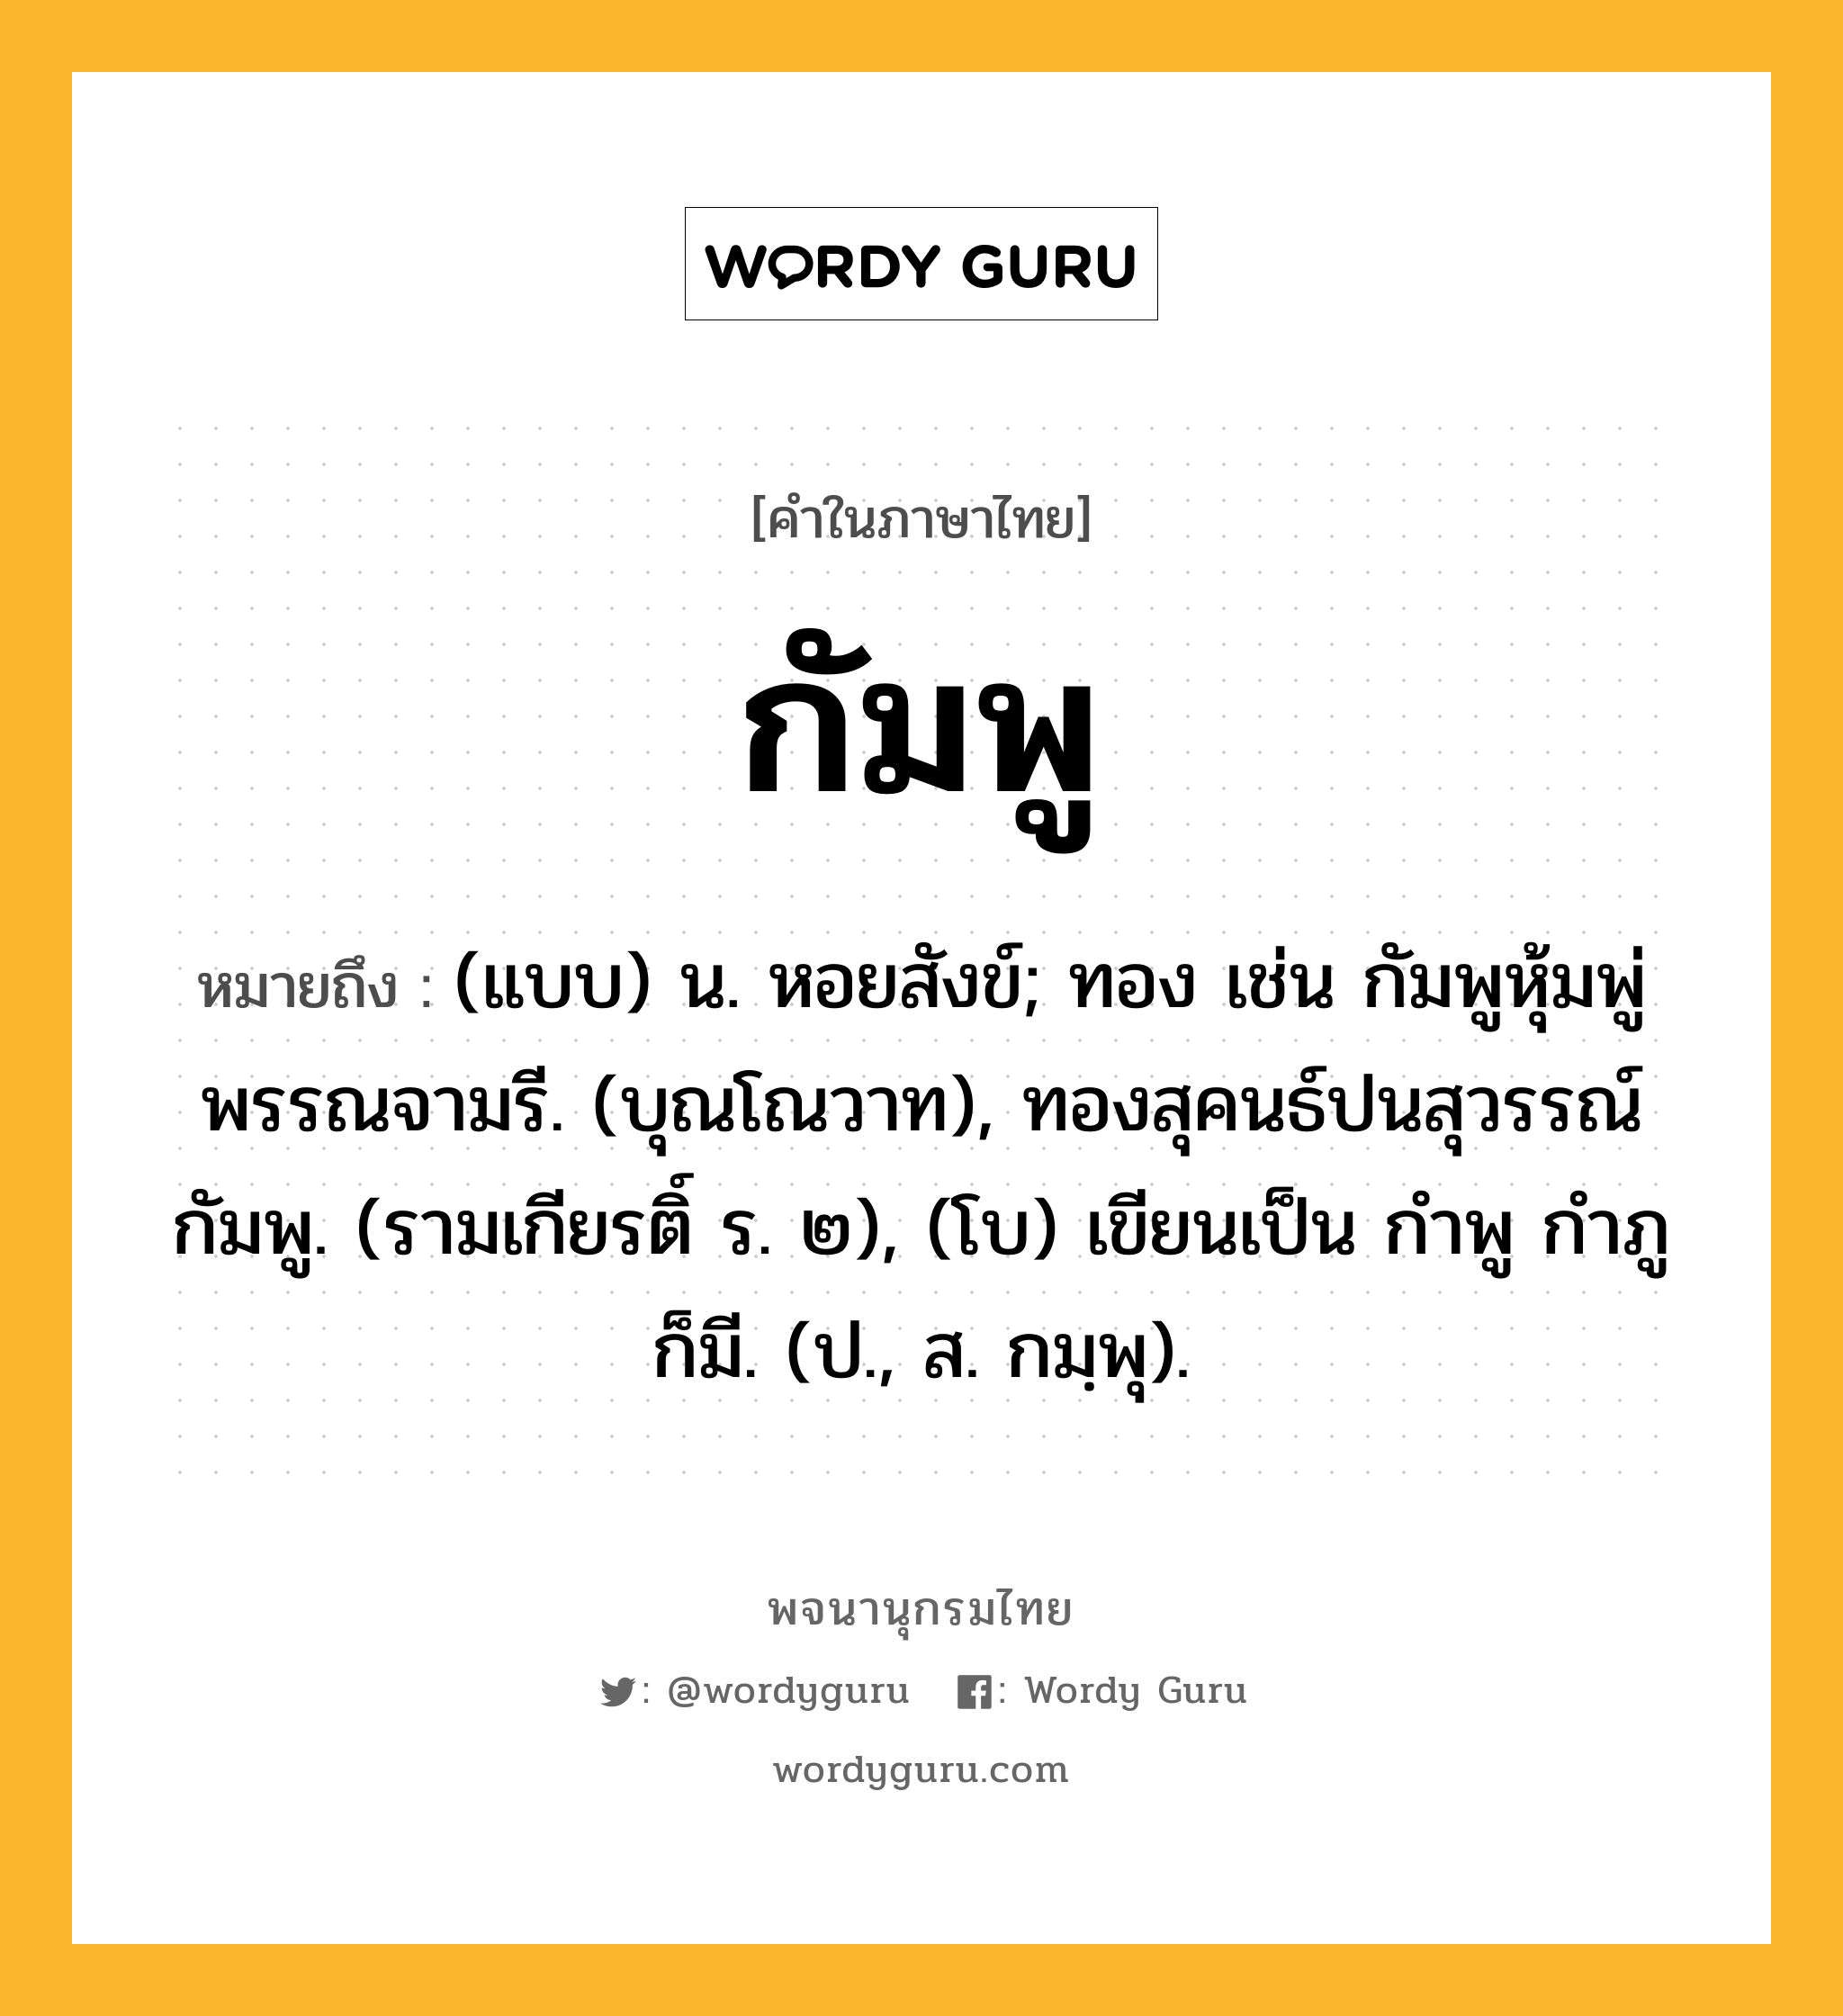 กัมพู หมายถึงอะไร?, คำในภาษาไทย กัมพู หมายถึง (แบบ) น. หอยสังข์; ทอง เช่น กัมพูหุ้มพู่พรรณจามรี. (บุณโณวาท), ทองสุคนธ์ปนสุวรรณ์กัมพู. (รามเกียรติ์ ร. ๒), (โบ) เขียนเป็น กําพู กําภู ก็มี. (ป., ส. กมฺพุ).